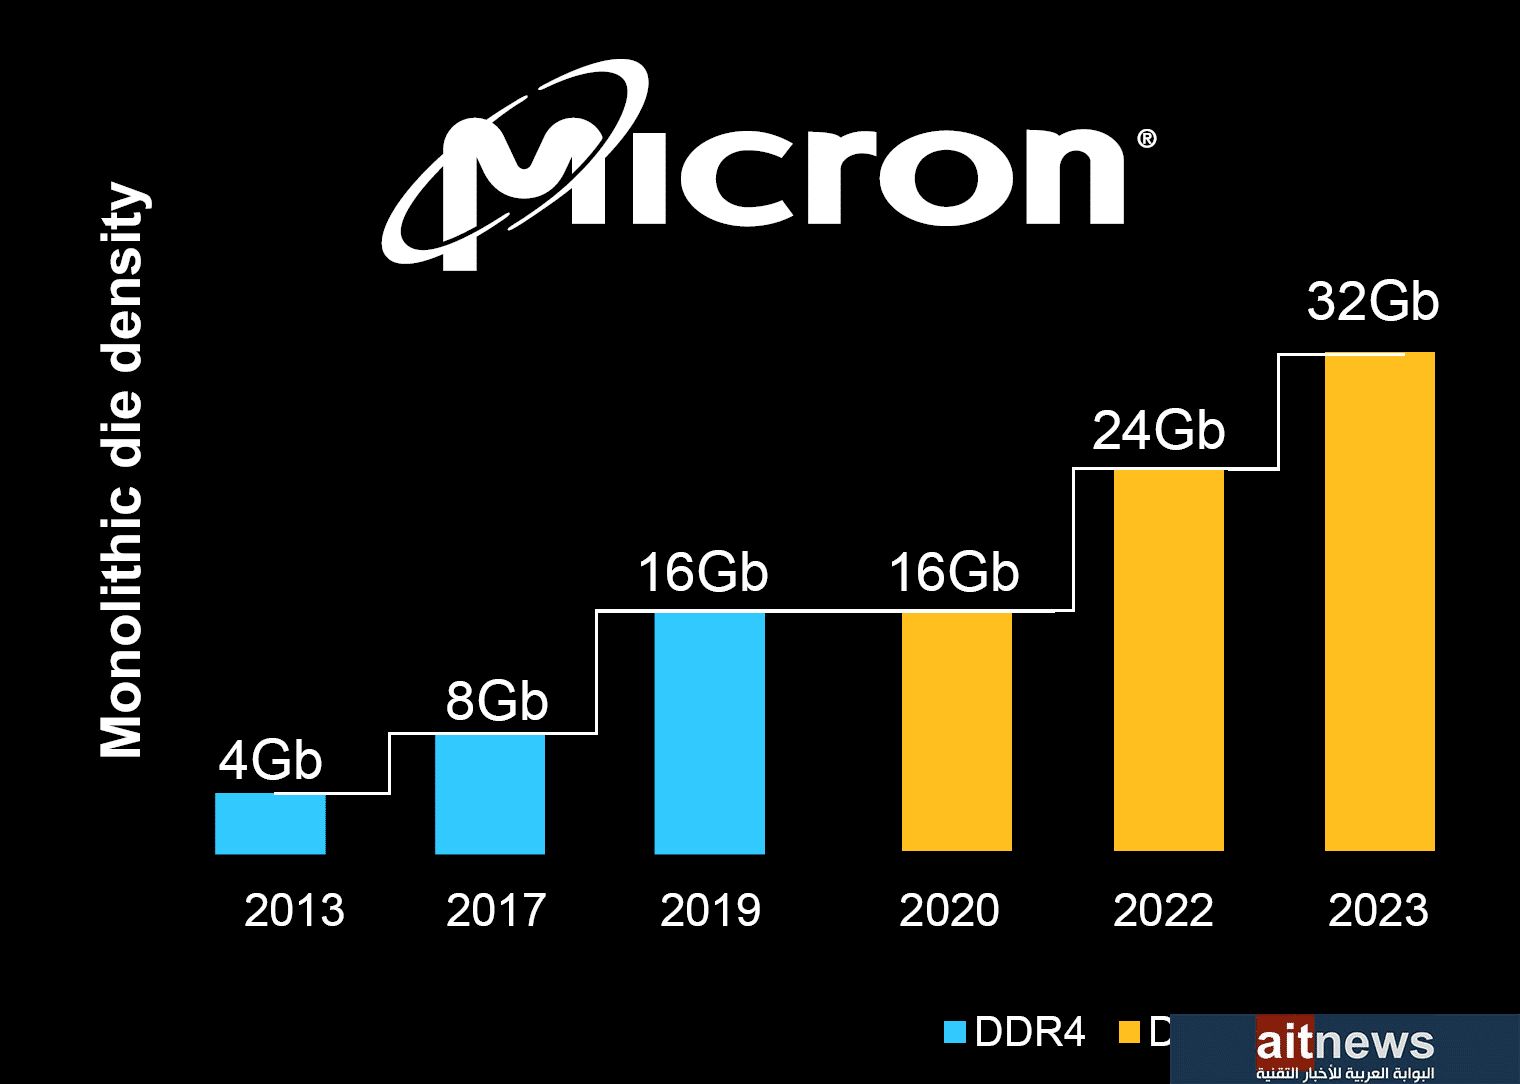 ميكرون تكشف عن ذاكرة DDR5 RDIMM بحجم يصل إلى 128 جيجابايت